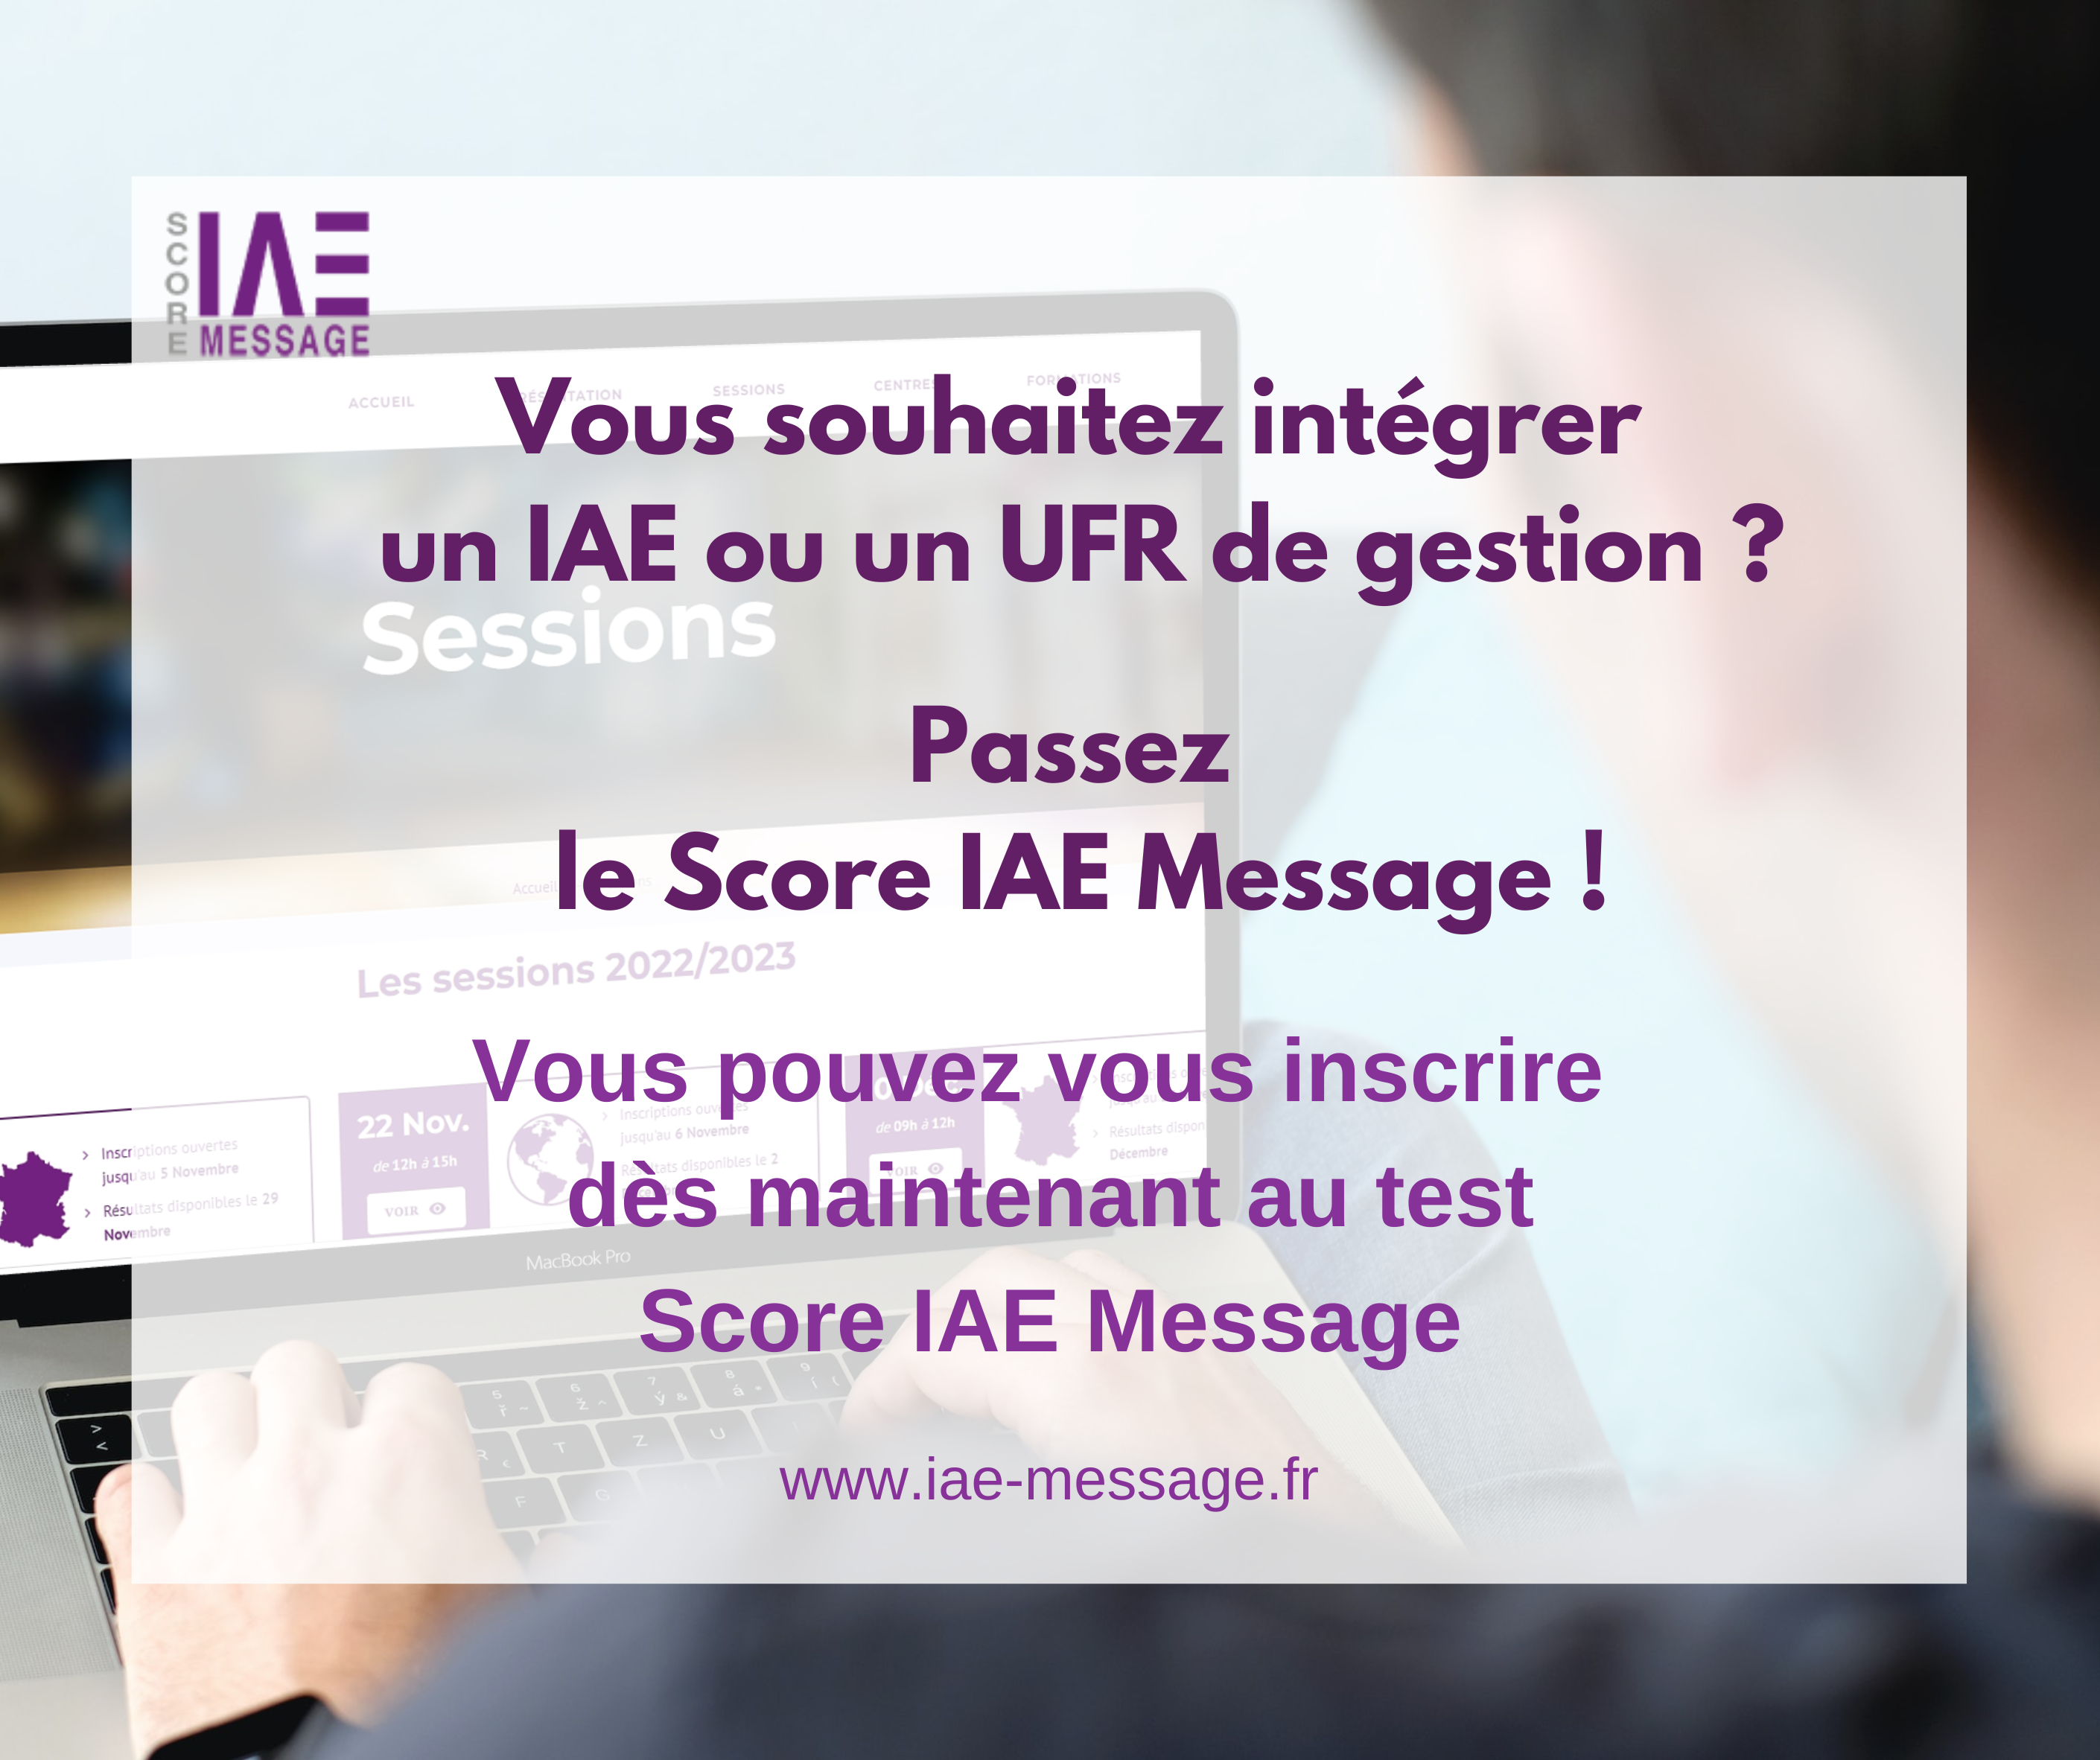 Les dates de passage du test Score IAE Message sont disponible !